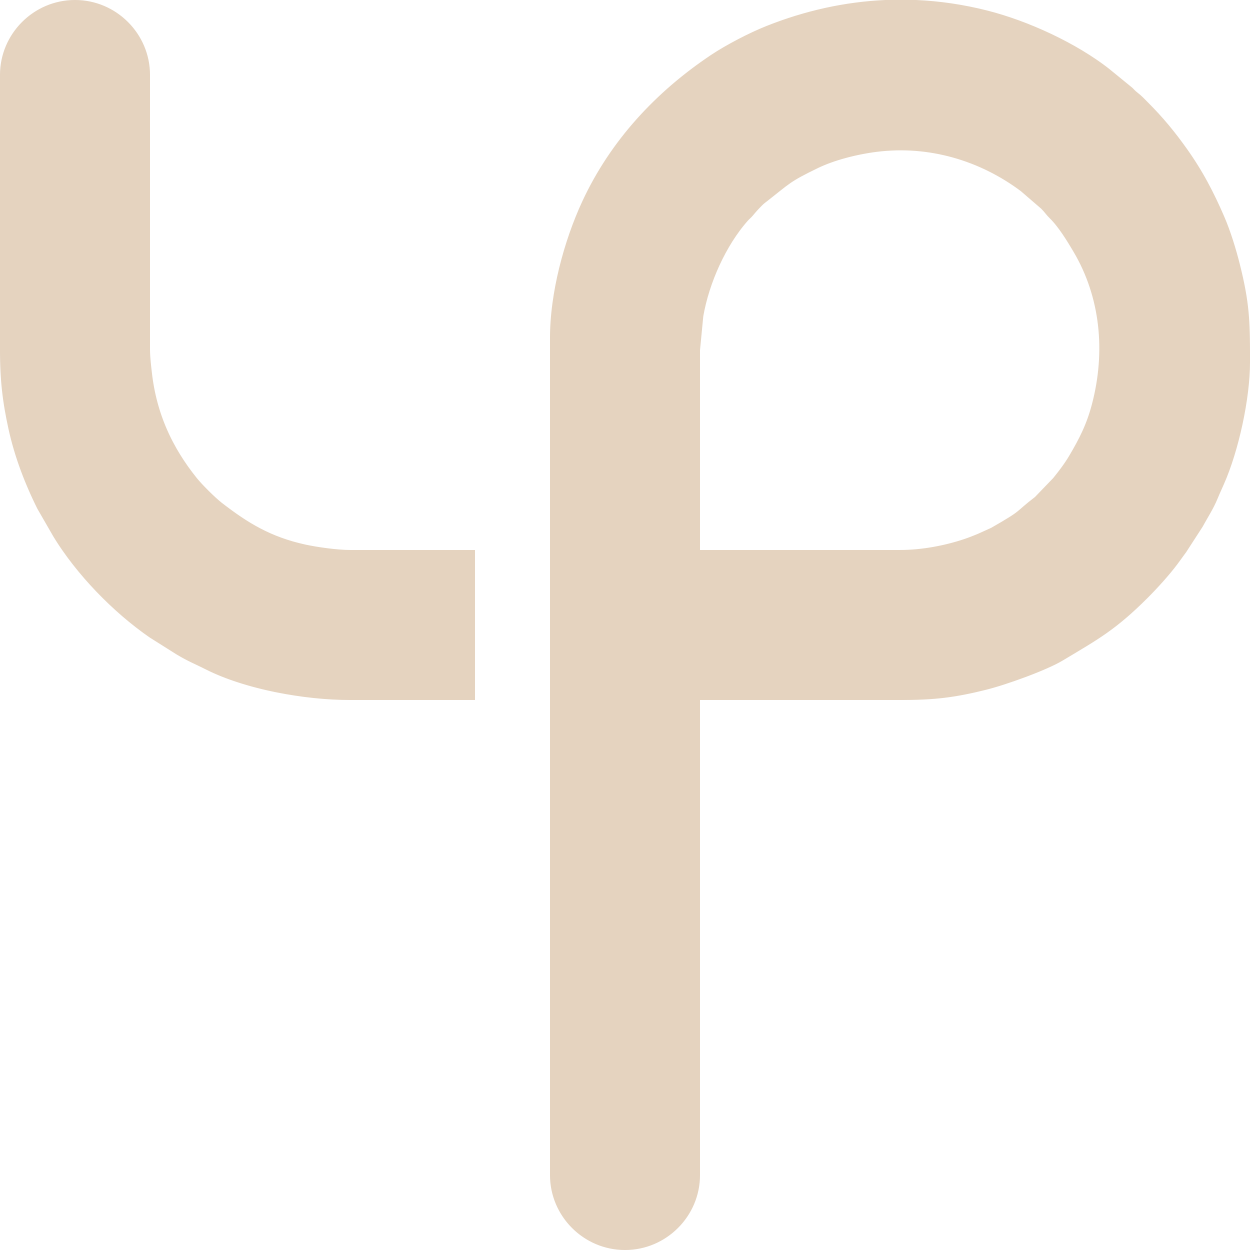 4P Logo